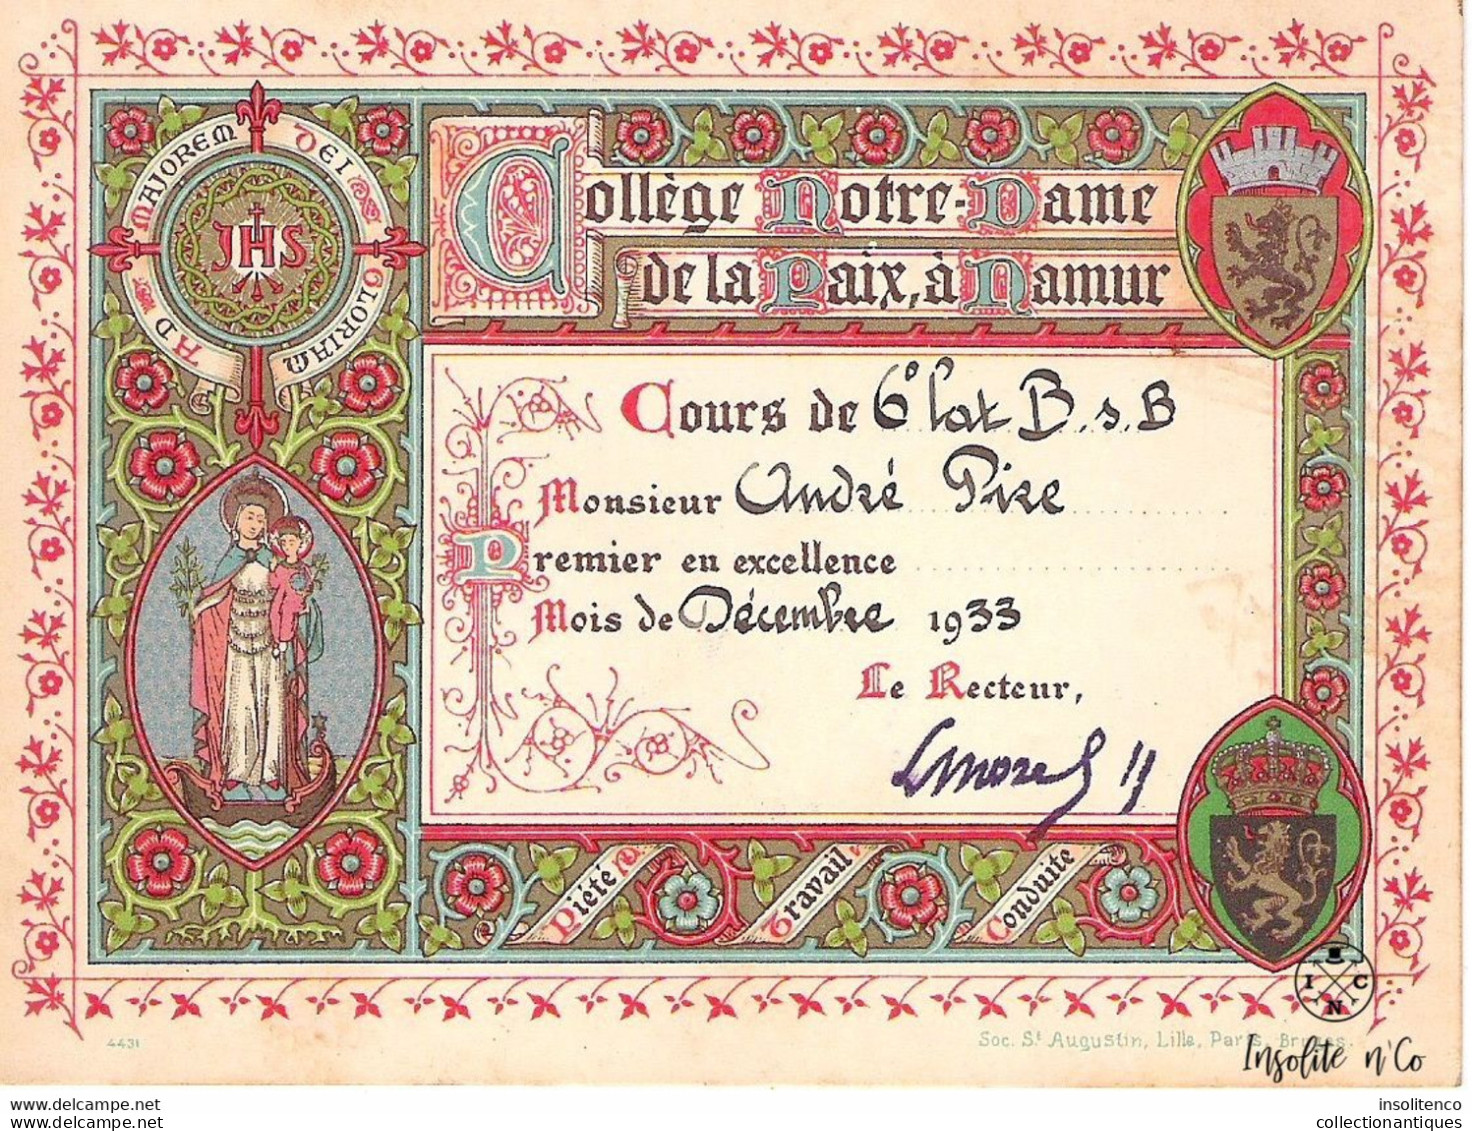 Collège Notre-Dame De La Paix - Namur- Décembre 1933 - Prix D'excellence - Cours De 6ème Latin B - André Pire - Bon état - Diplômes & Bulletins Scolaires